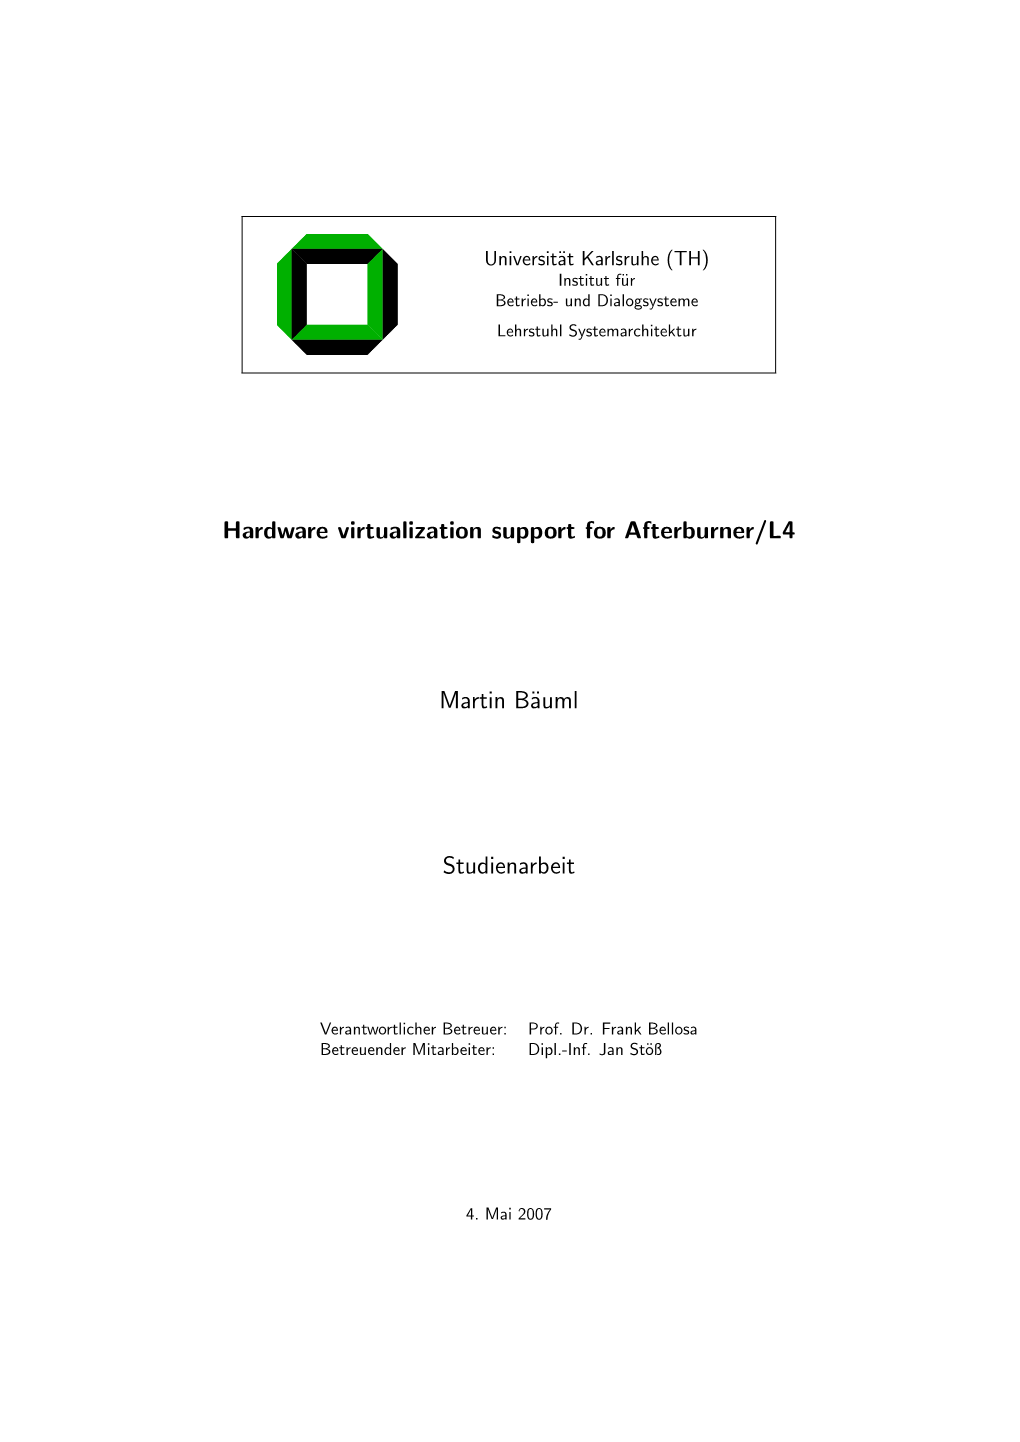 Hardware Virtualization Support for Afterburner/L4